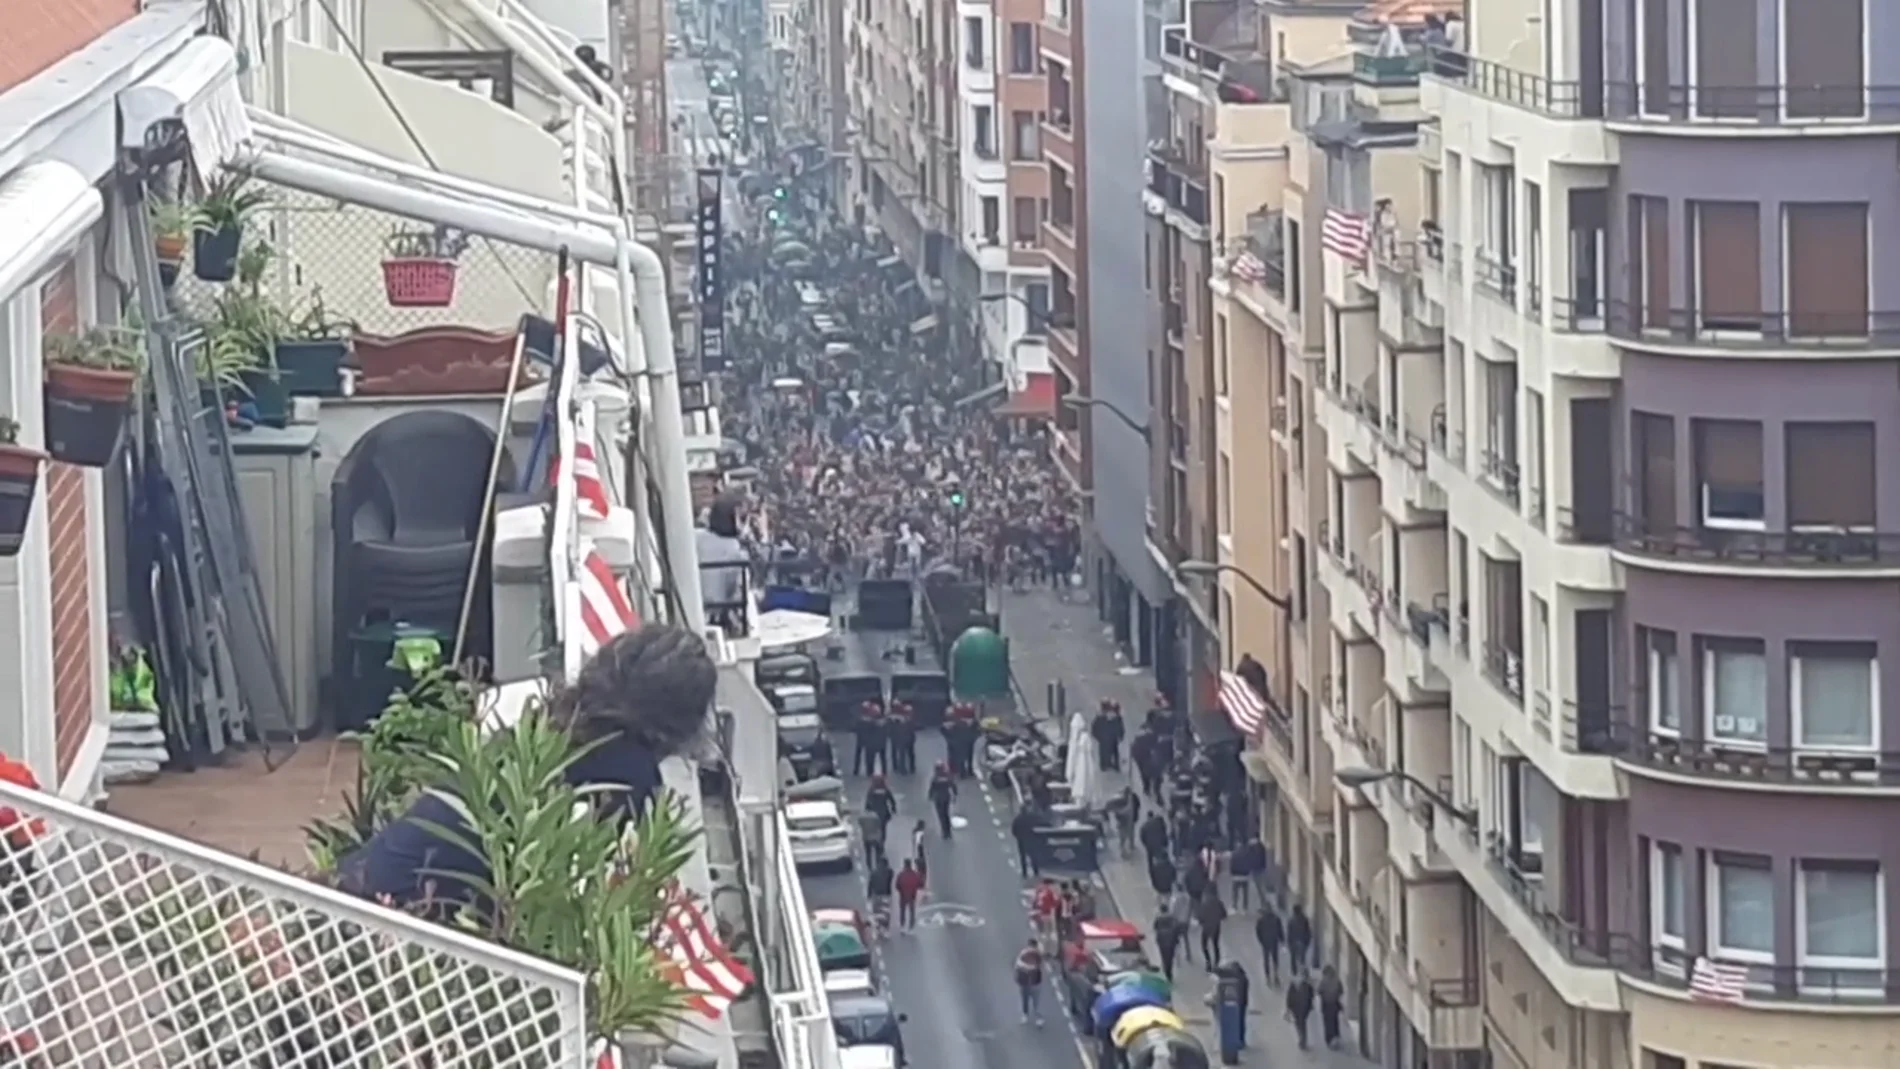 Aglomeraciones de gente sin respetar la distancia de seguridad en Bilbao antes de la final de la Copa del Rey